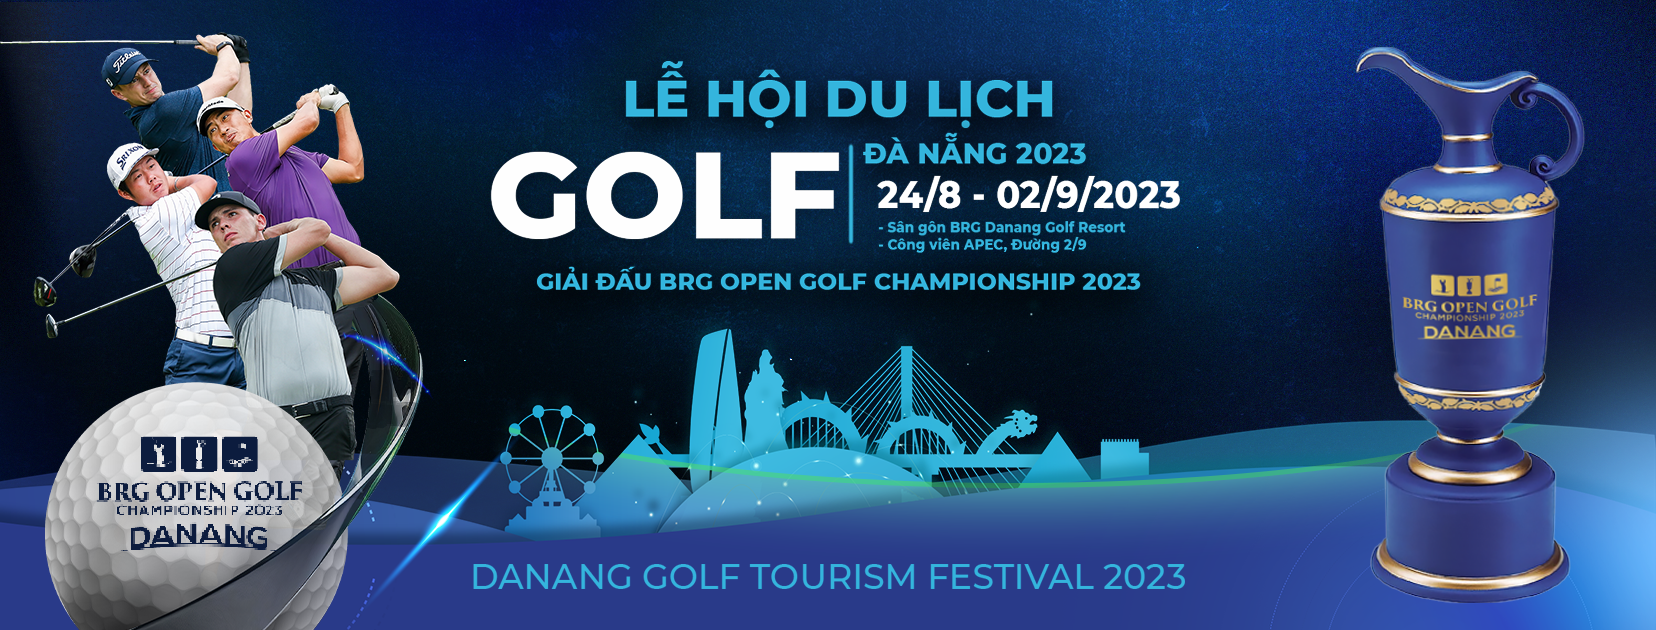 Lễ hội du lịch Golf Đà Nẵng 2023 - Có gì hấp dẫn?